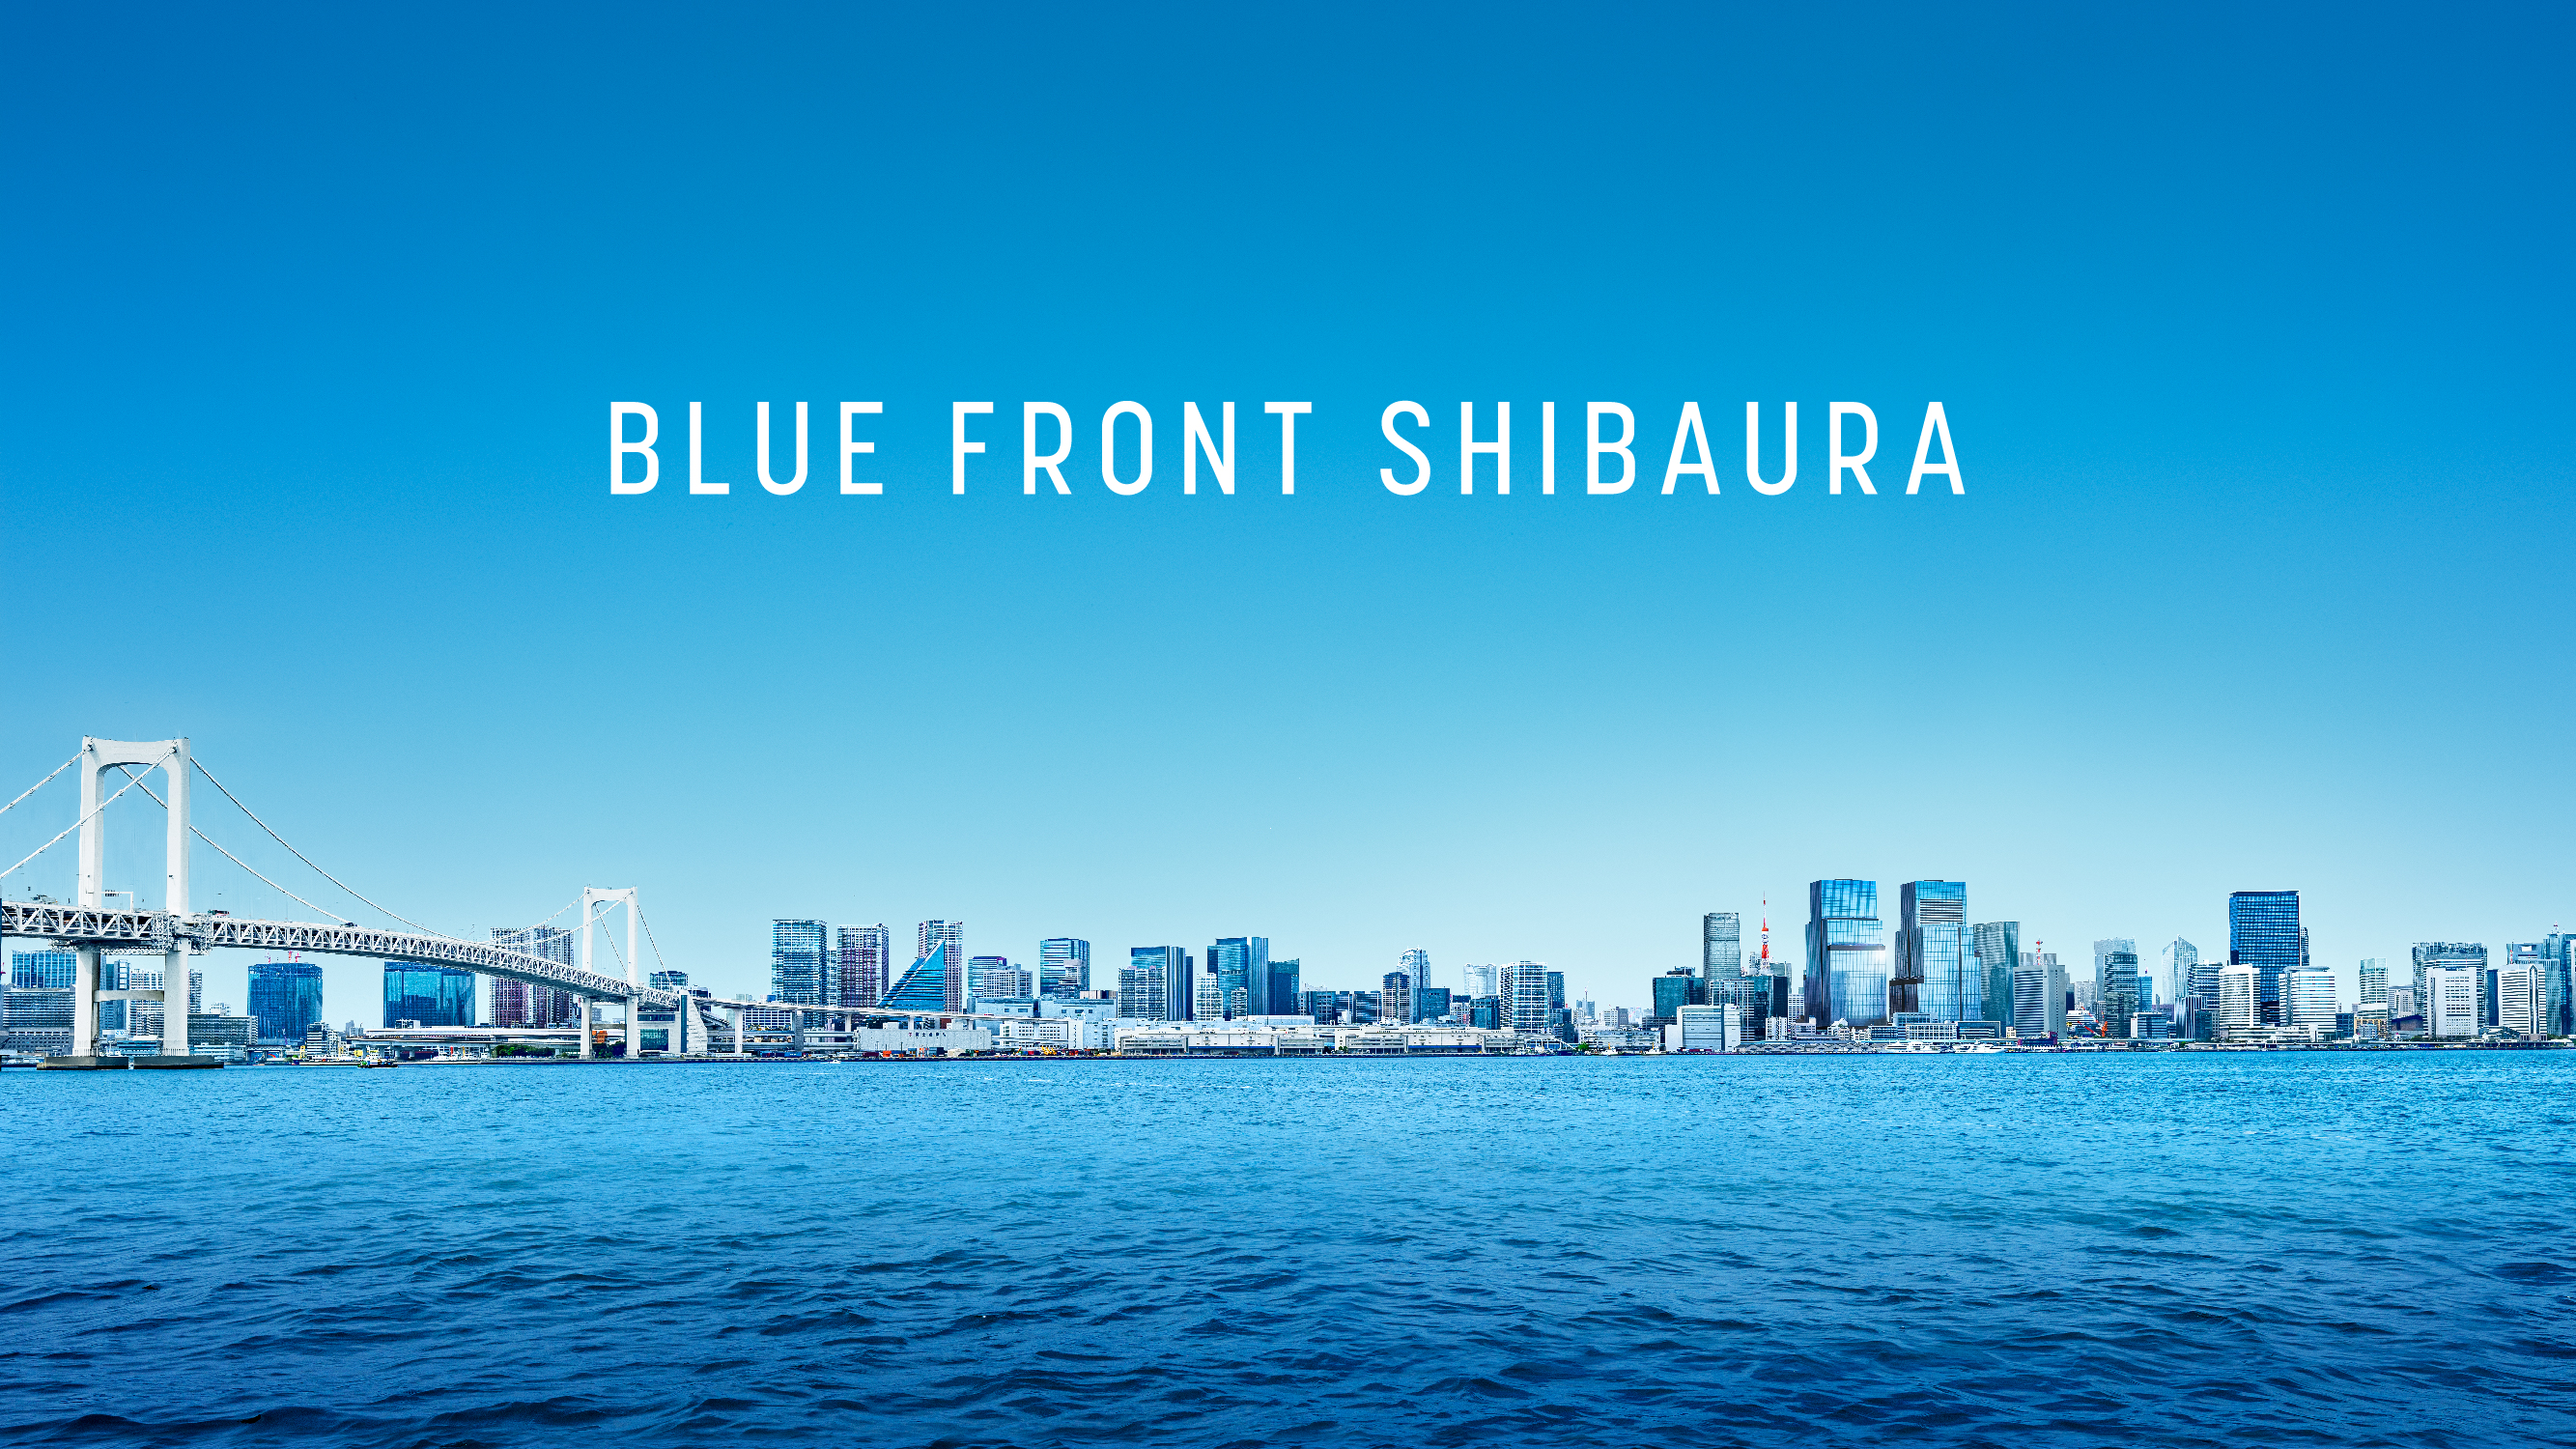 延床面積約 55 万㎡の大規模複合開発「芝浦プロジェクト」街区名称決定　　　　　　　　　　　　　　　　　　　　　　　　　　　　　　　　　　　　　　　　「BLUE FRONT SHIBAURA」のサブ画像2